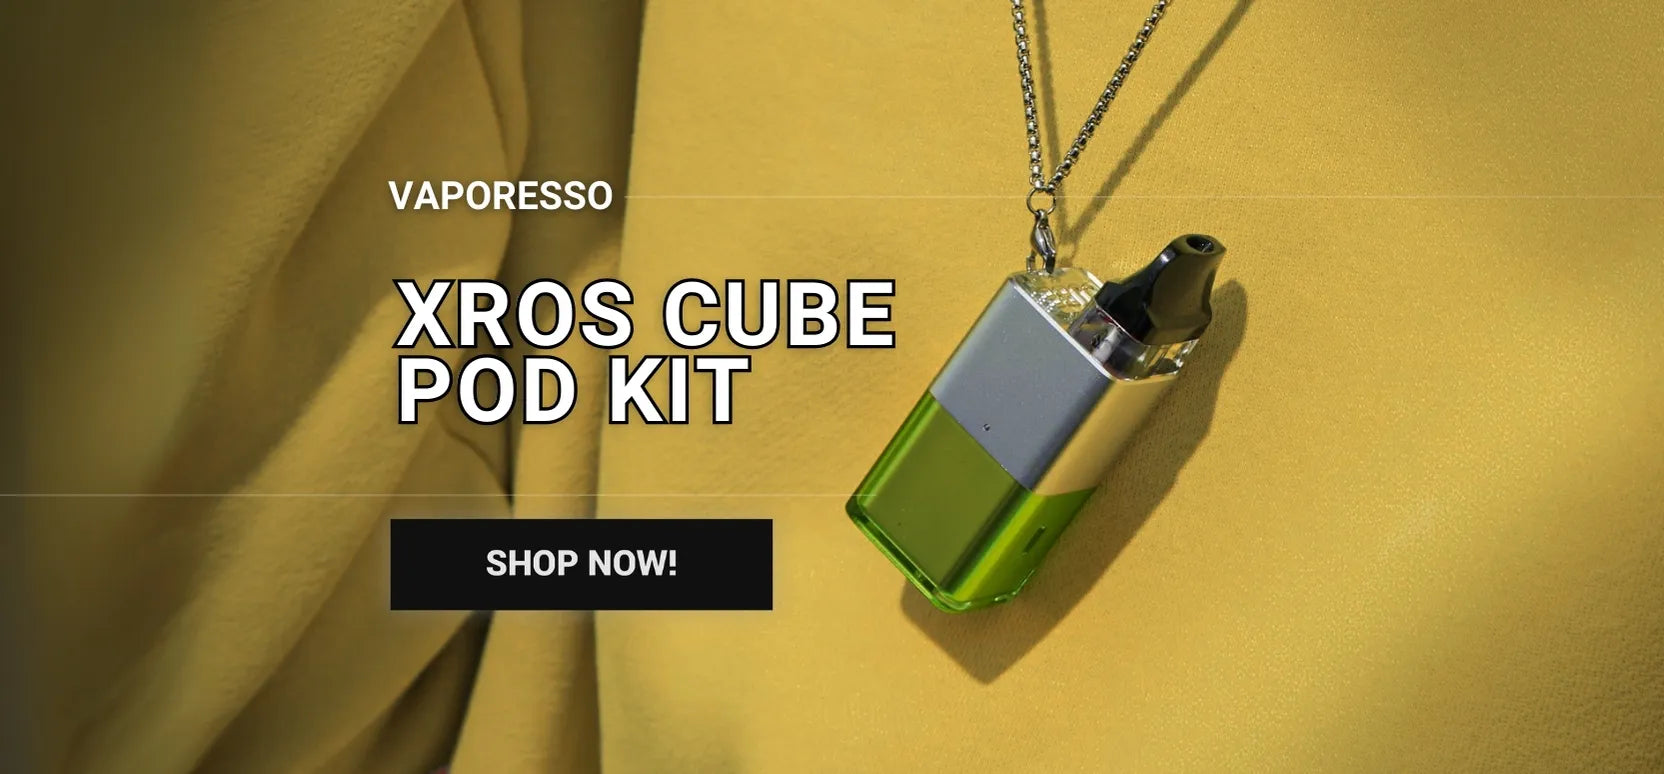 Vaporesso Xros Cube Vape Pod Kit Homepage Banner